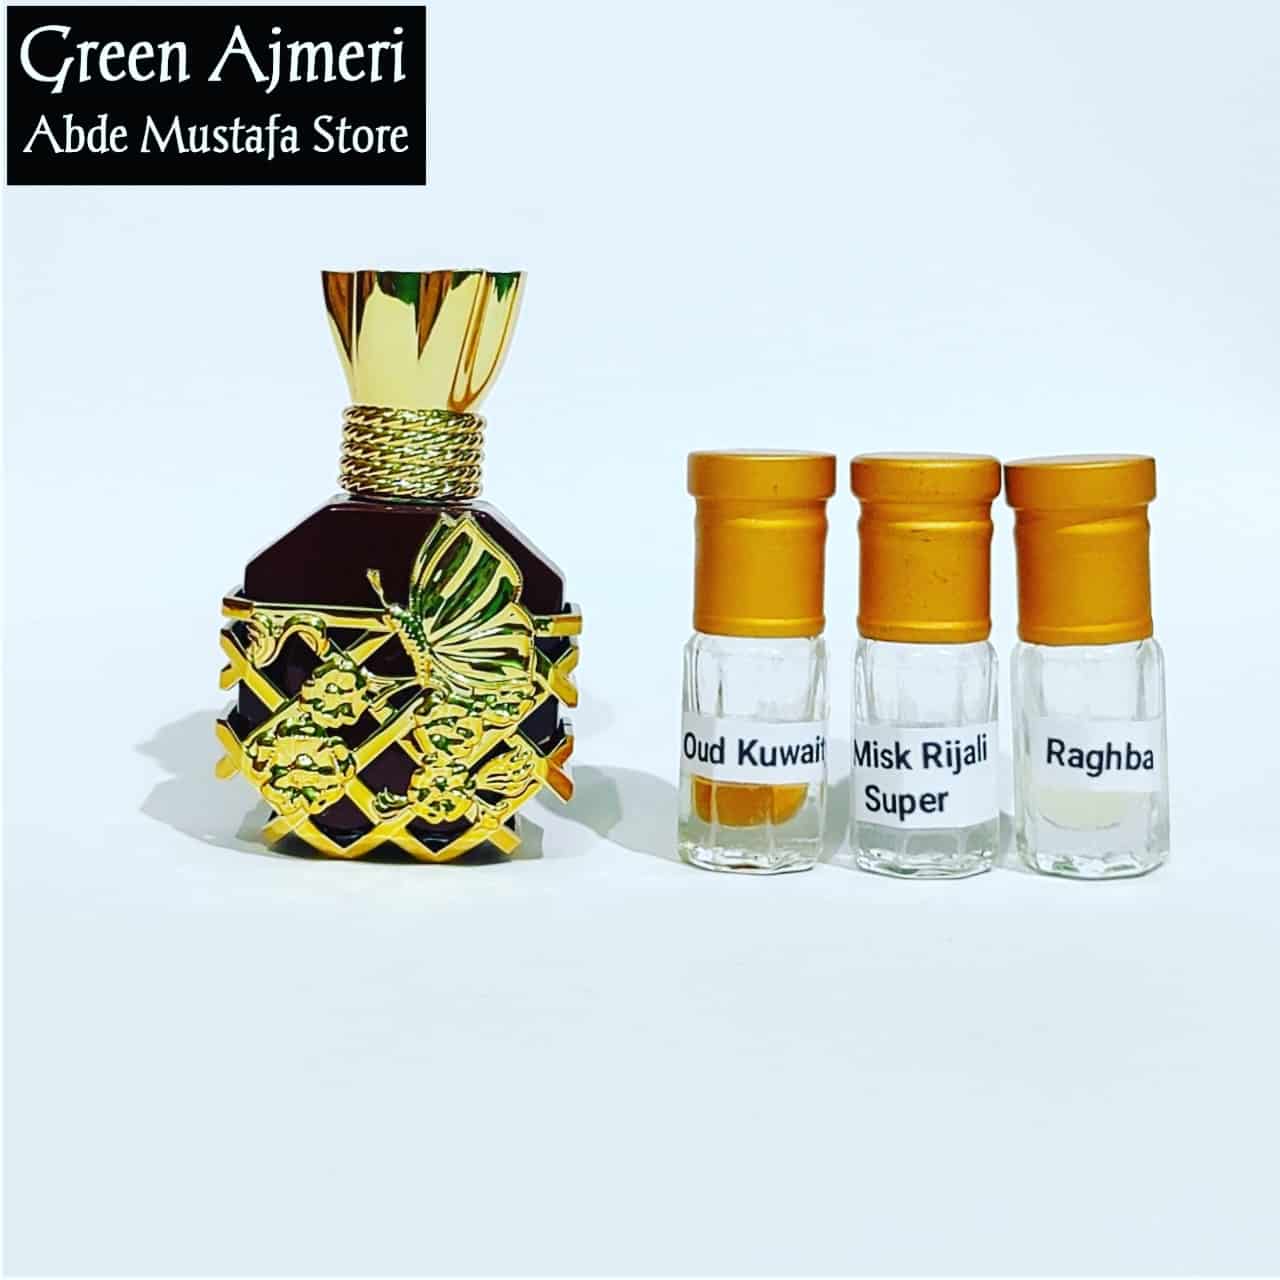 Green Ajmeri Attar Premium Quality Non Alcoholic With Free Testers By Abde Mustafa Store